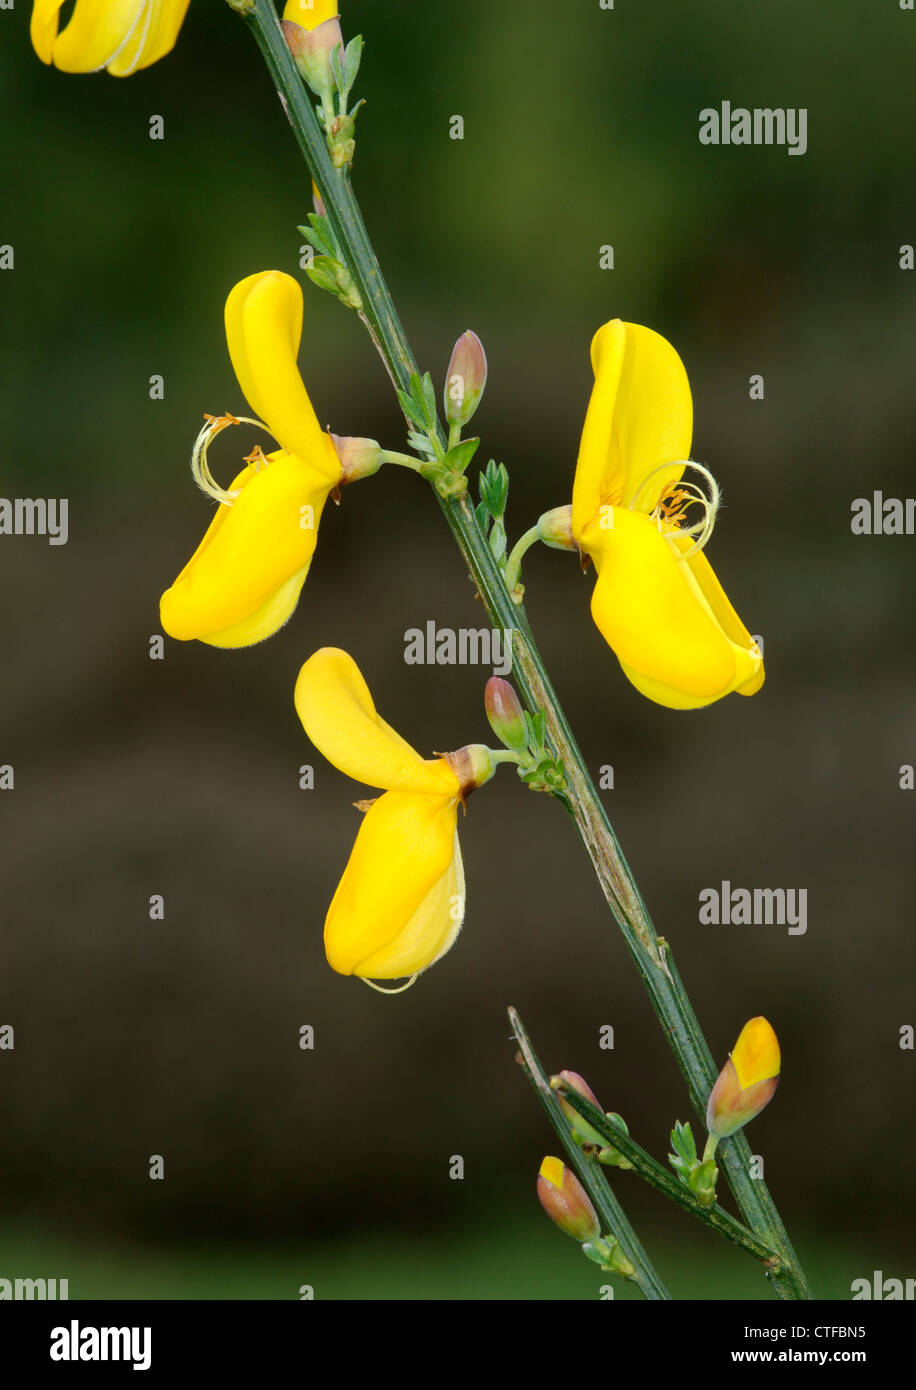 BROOM Cytisus scoparius (Fabaceae) Stock Photo